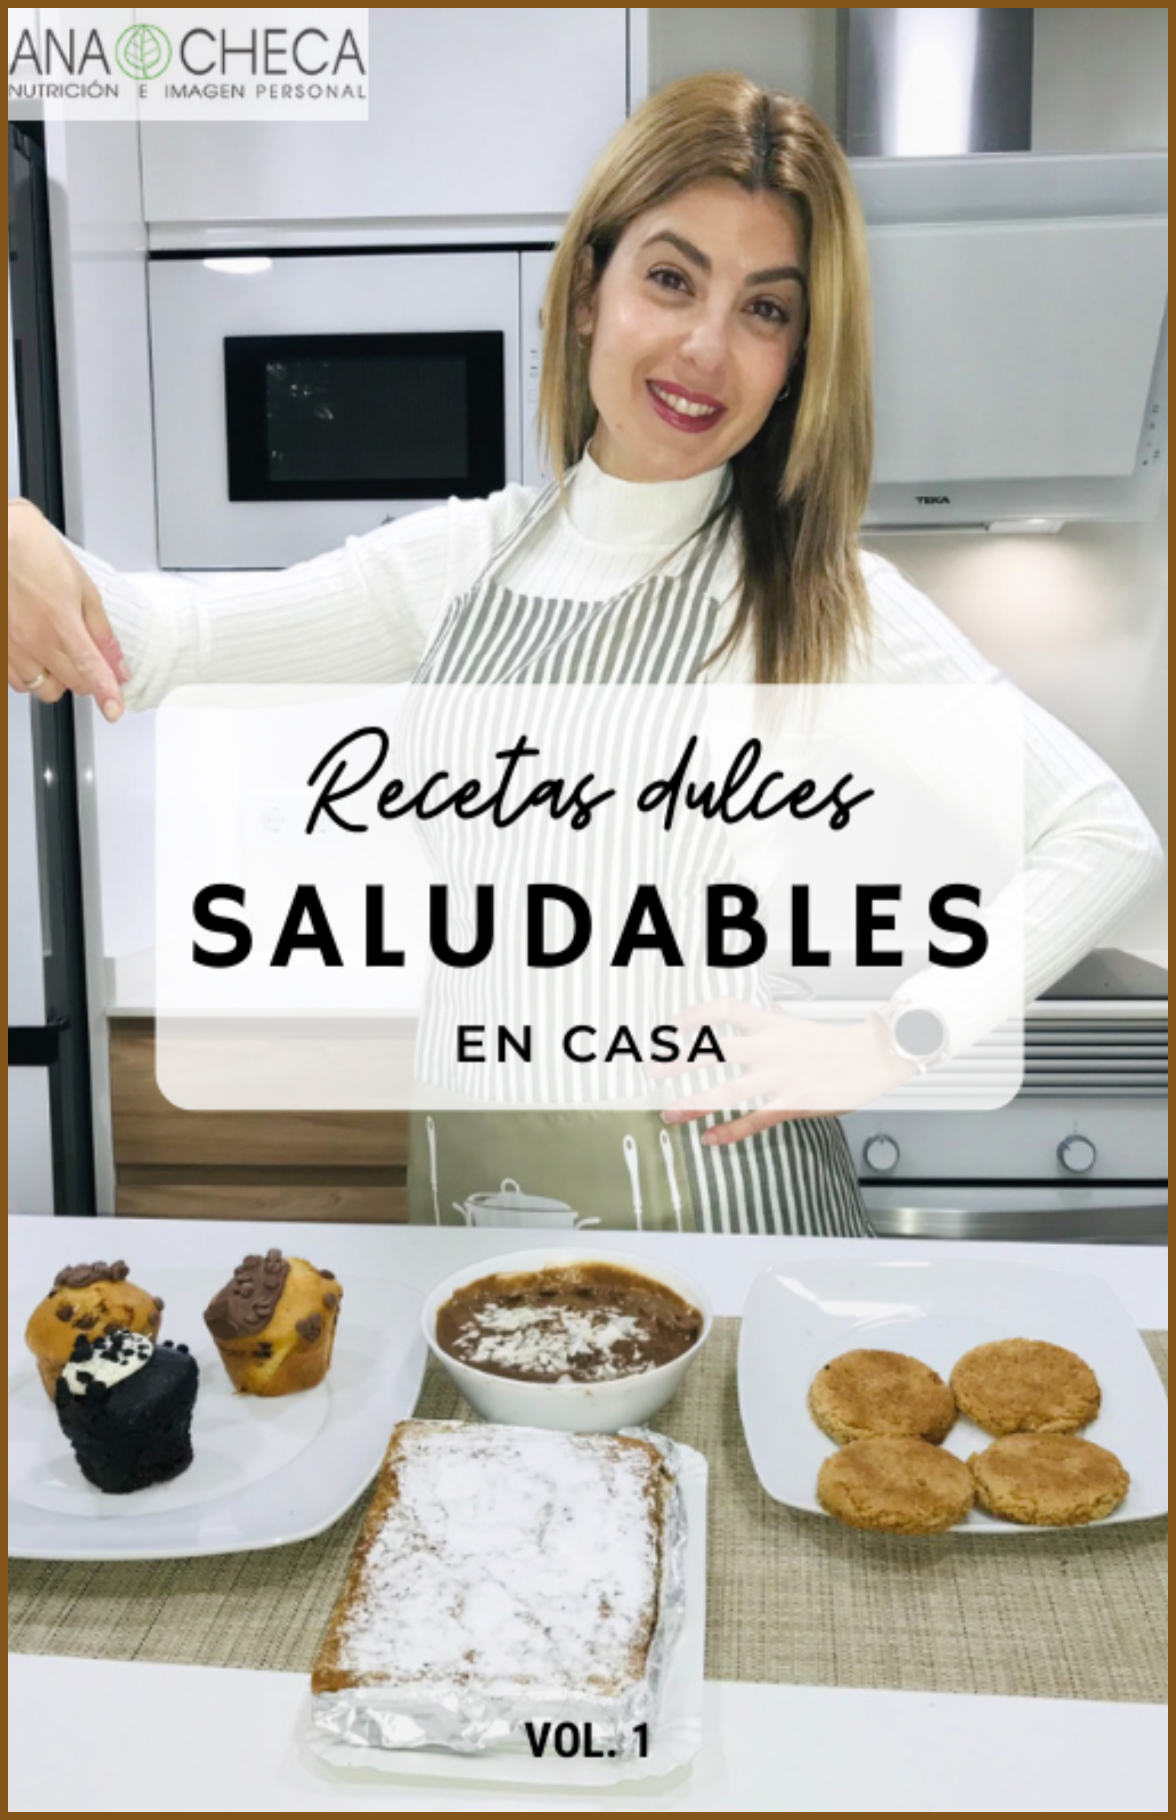 PORTADA LIBRO RECETAS DULCES - Ana Checa | Nutricionista en Alicante